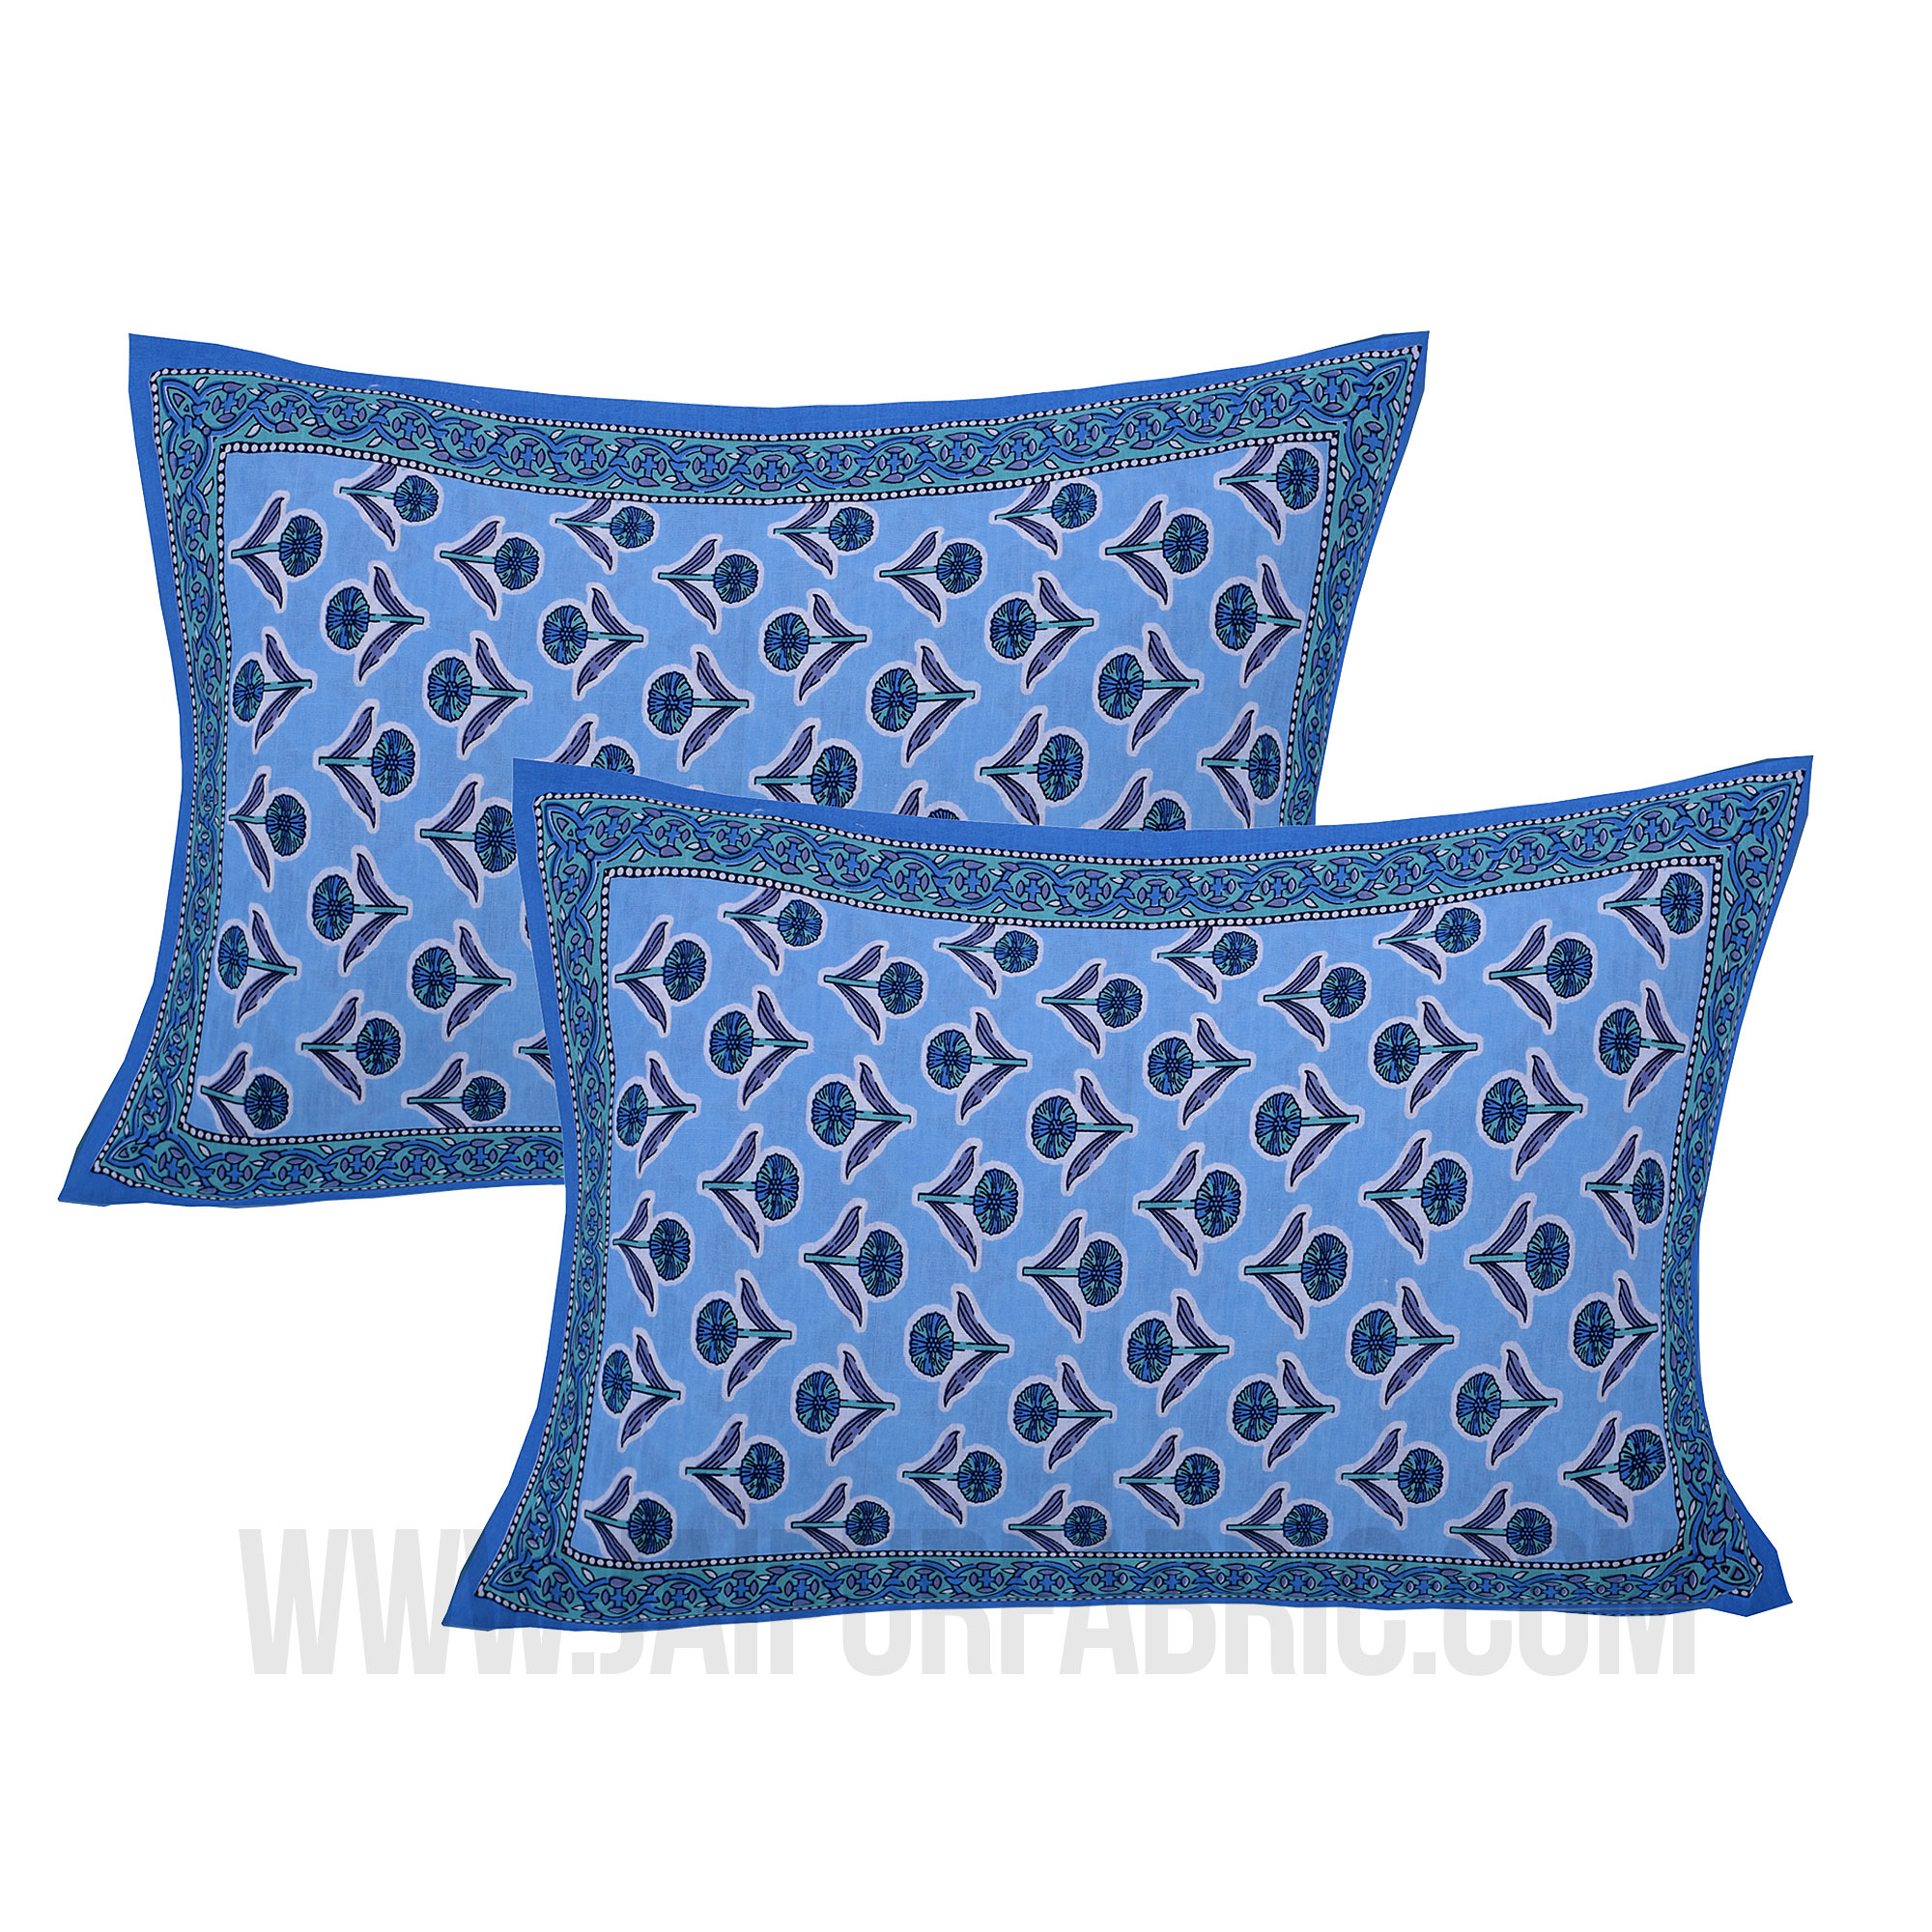 Pleasant Pedicel Blue Double Bedsheet